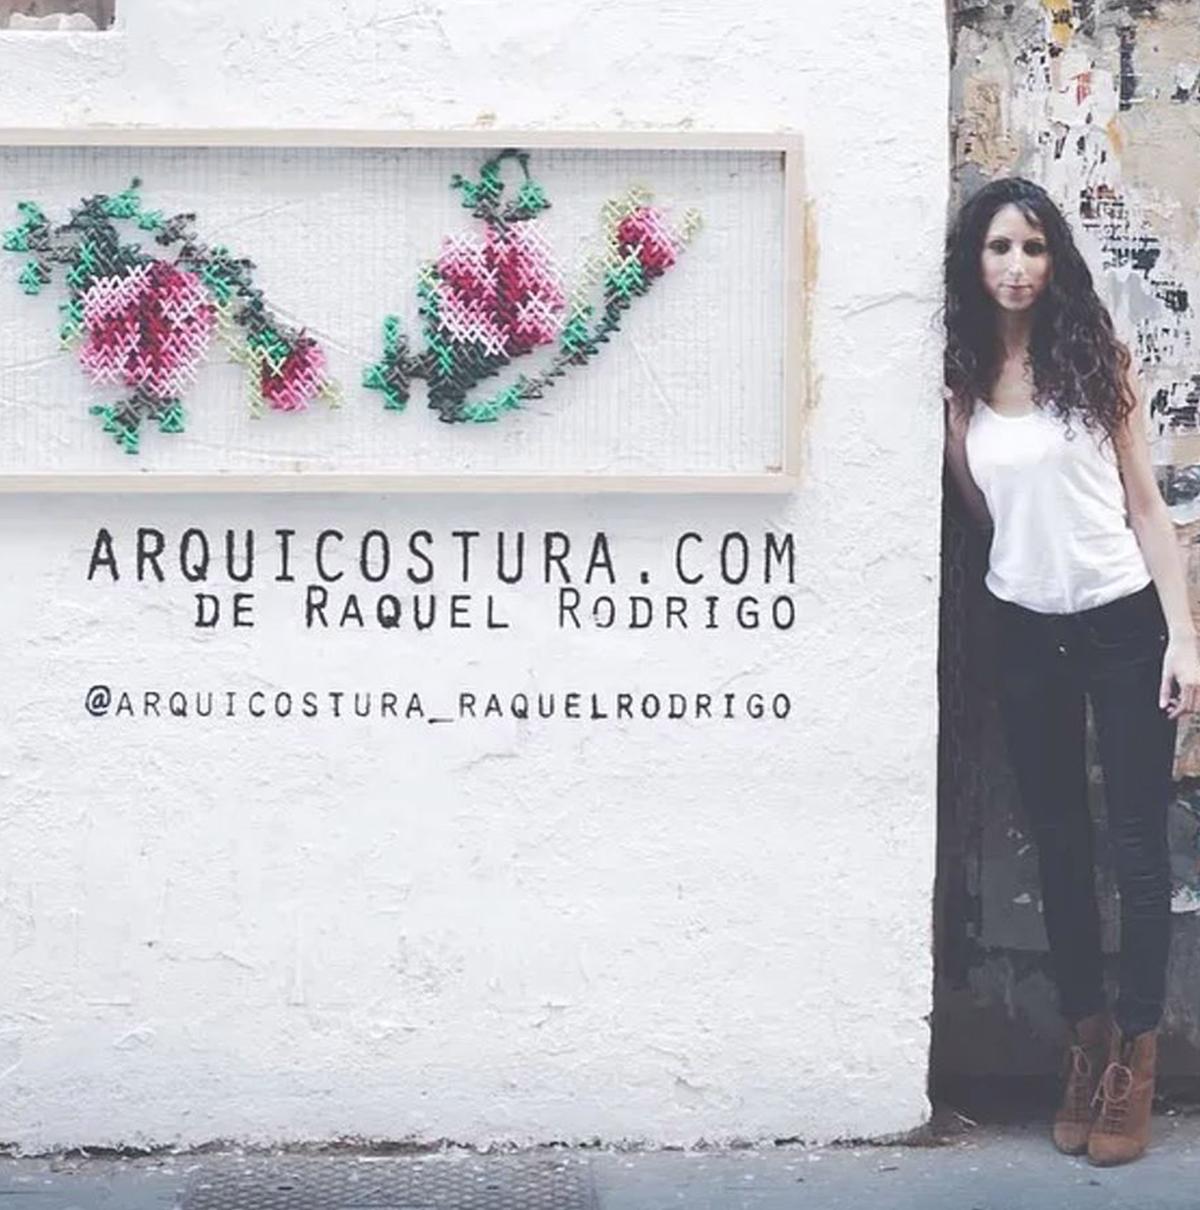 (Courtesy of <a href="https://www.instagram.com/arquicosturastudio/">Arquicostura Studio</a>)